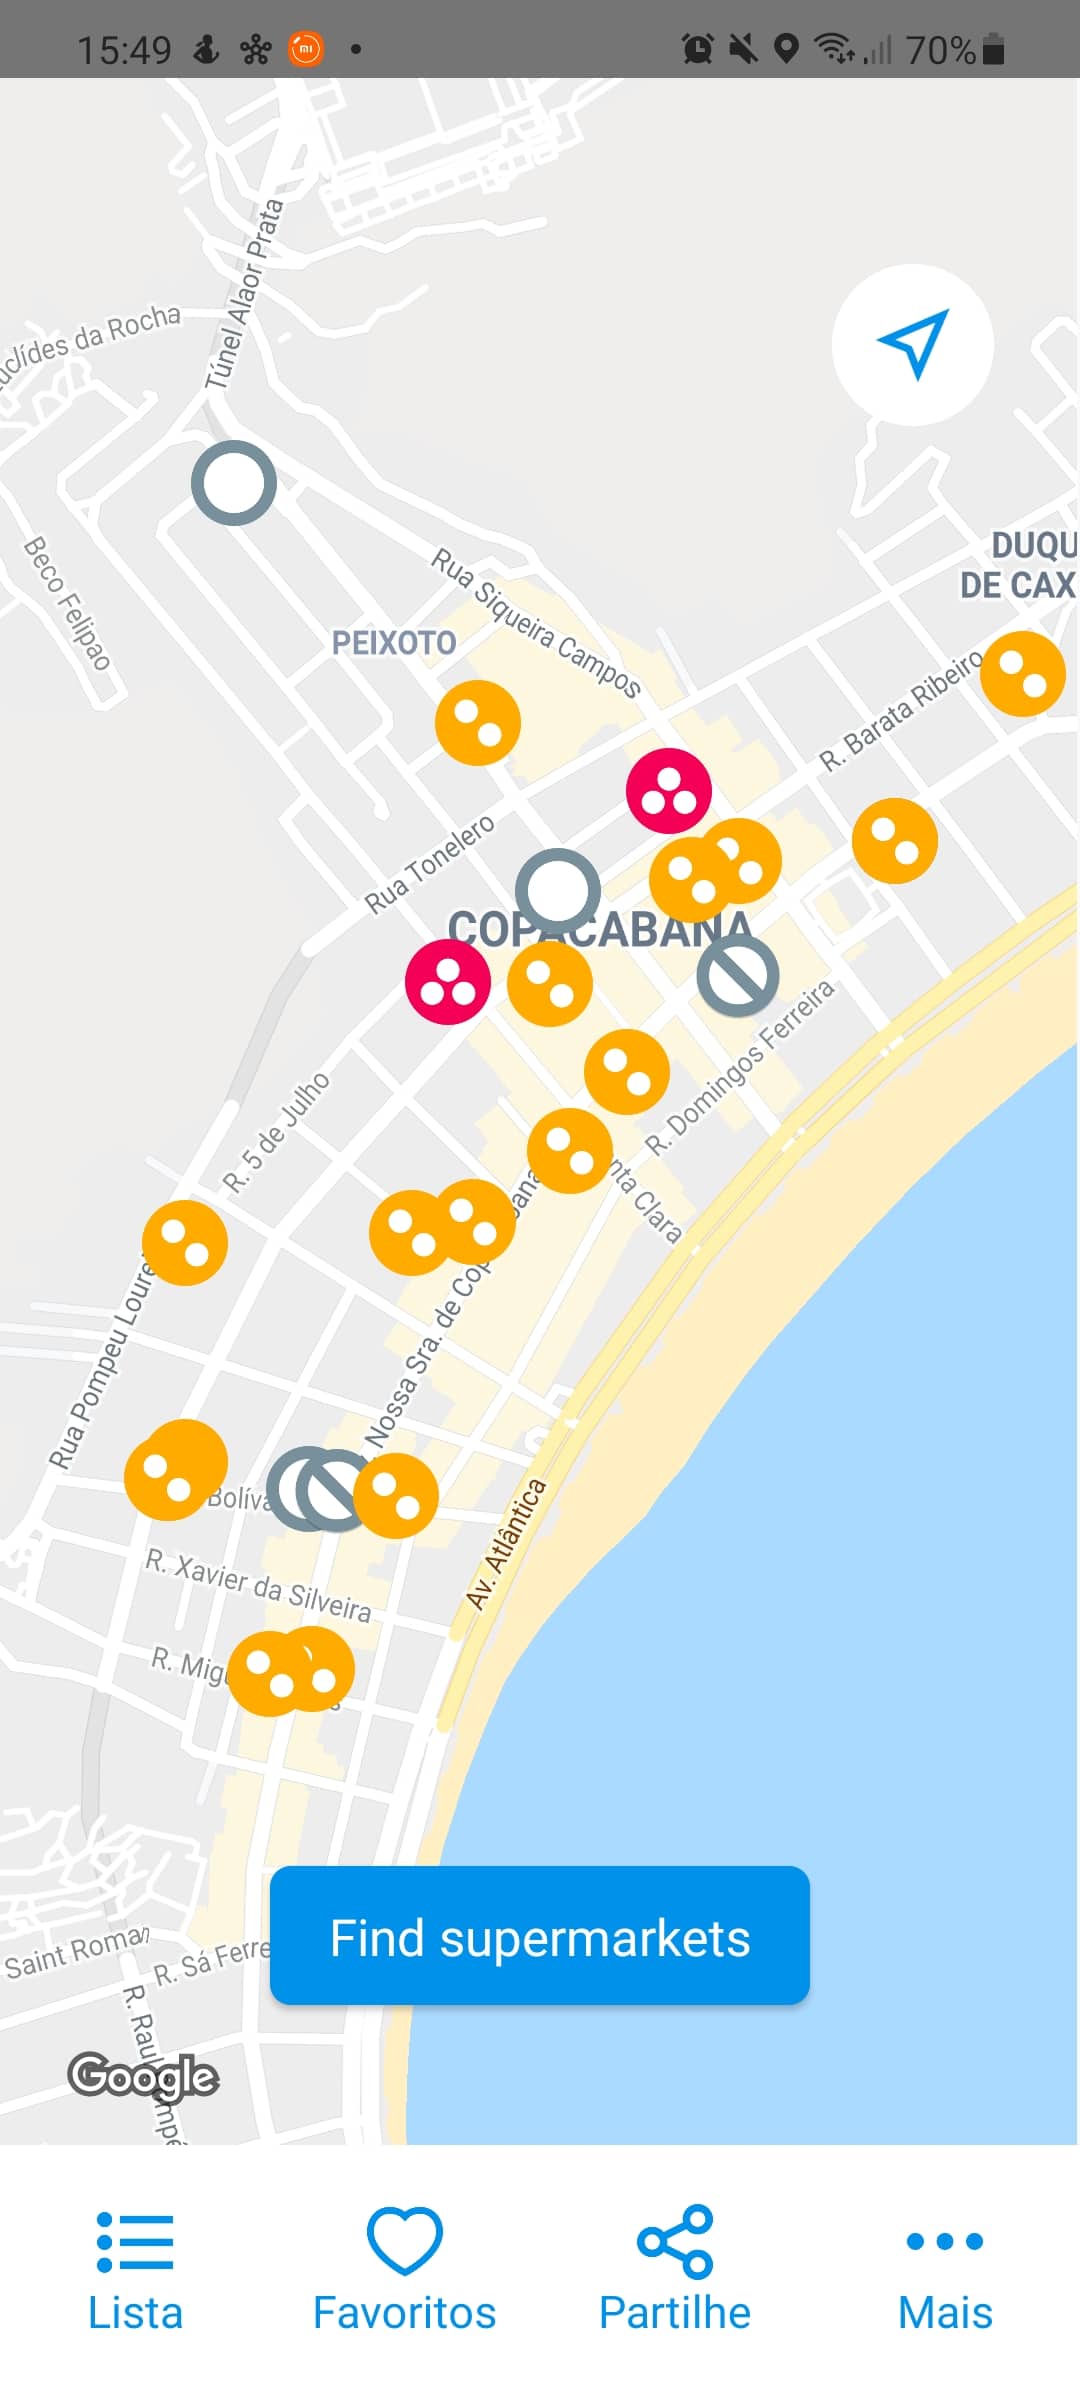 App Crowdless exibe se lojas estão cheias ou não a partir de representações visuais em mapa